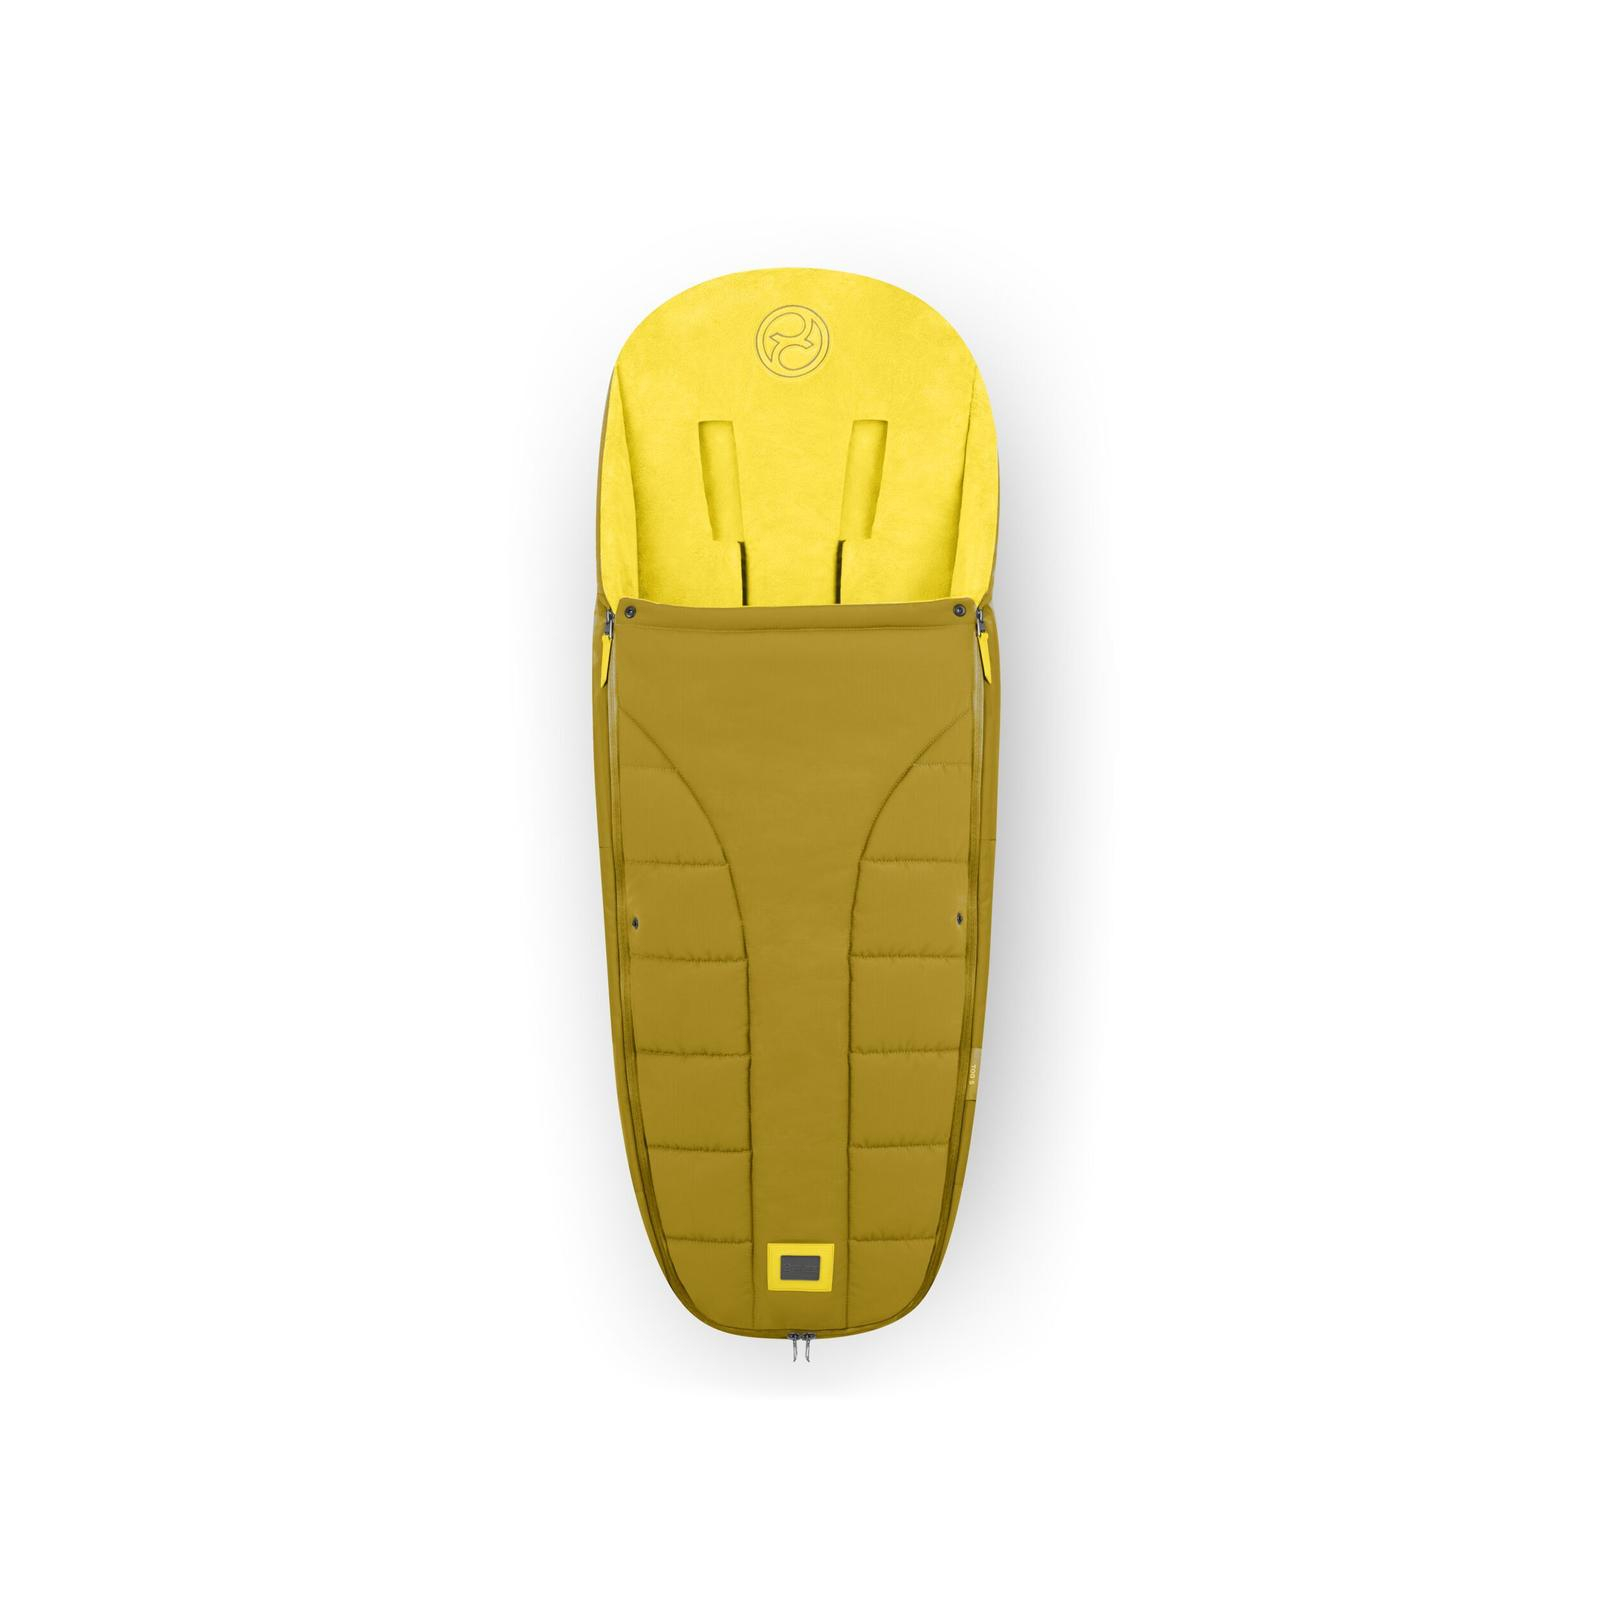 Чехол для ног Cybex Platinum Mustard Yellow (521002923)